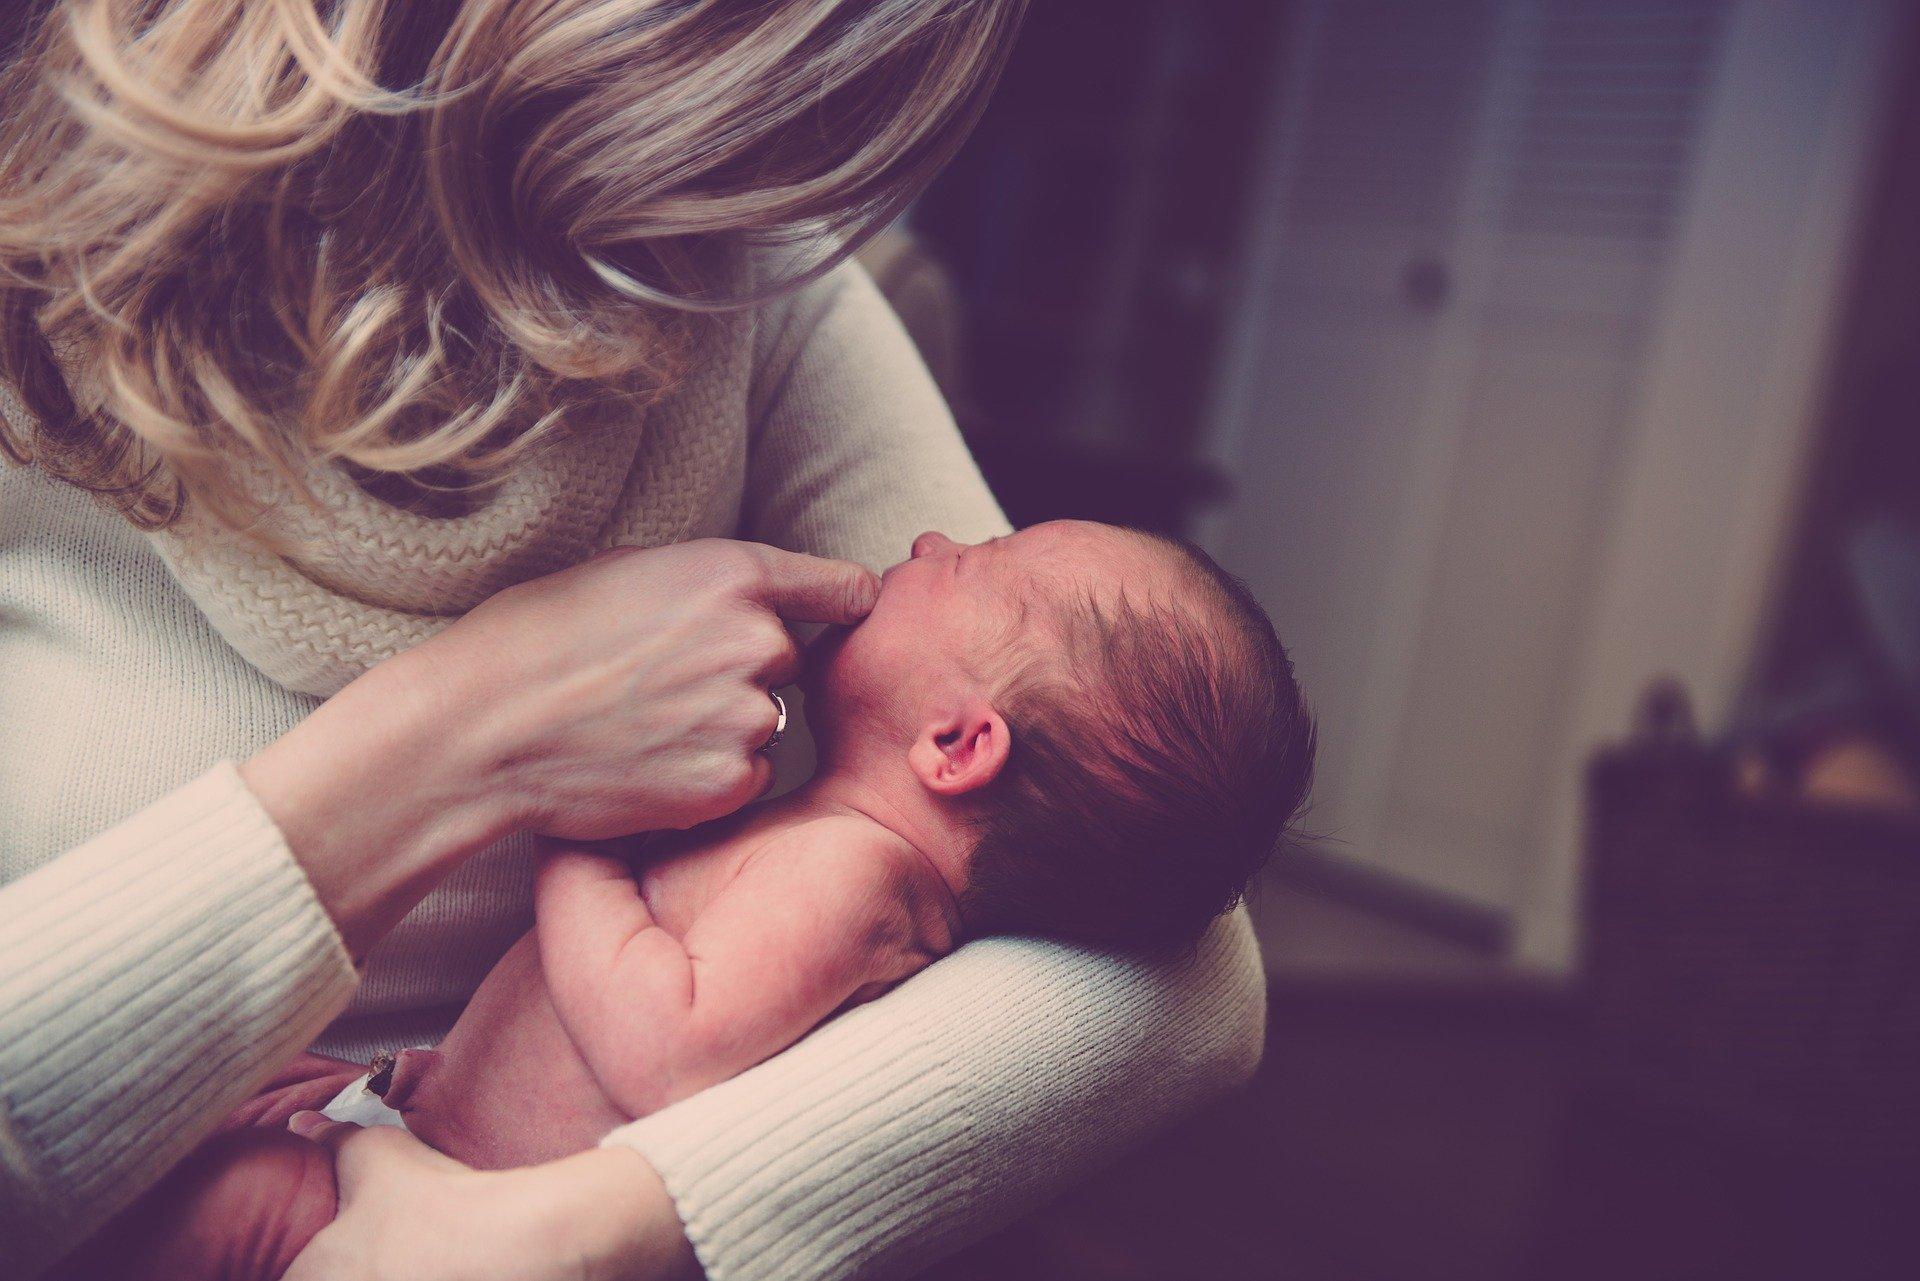 Следродилната депресия е състояние което засяга значителен брой нови майки